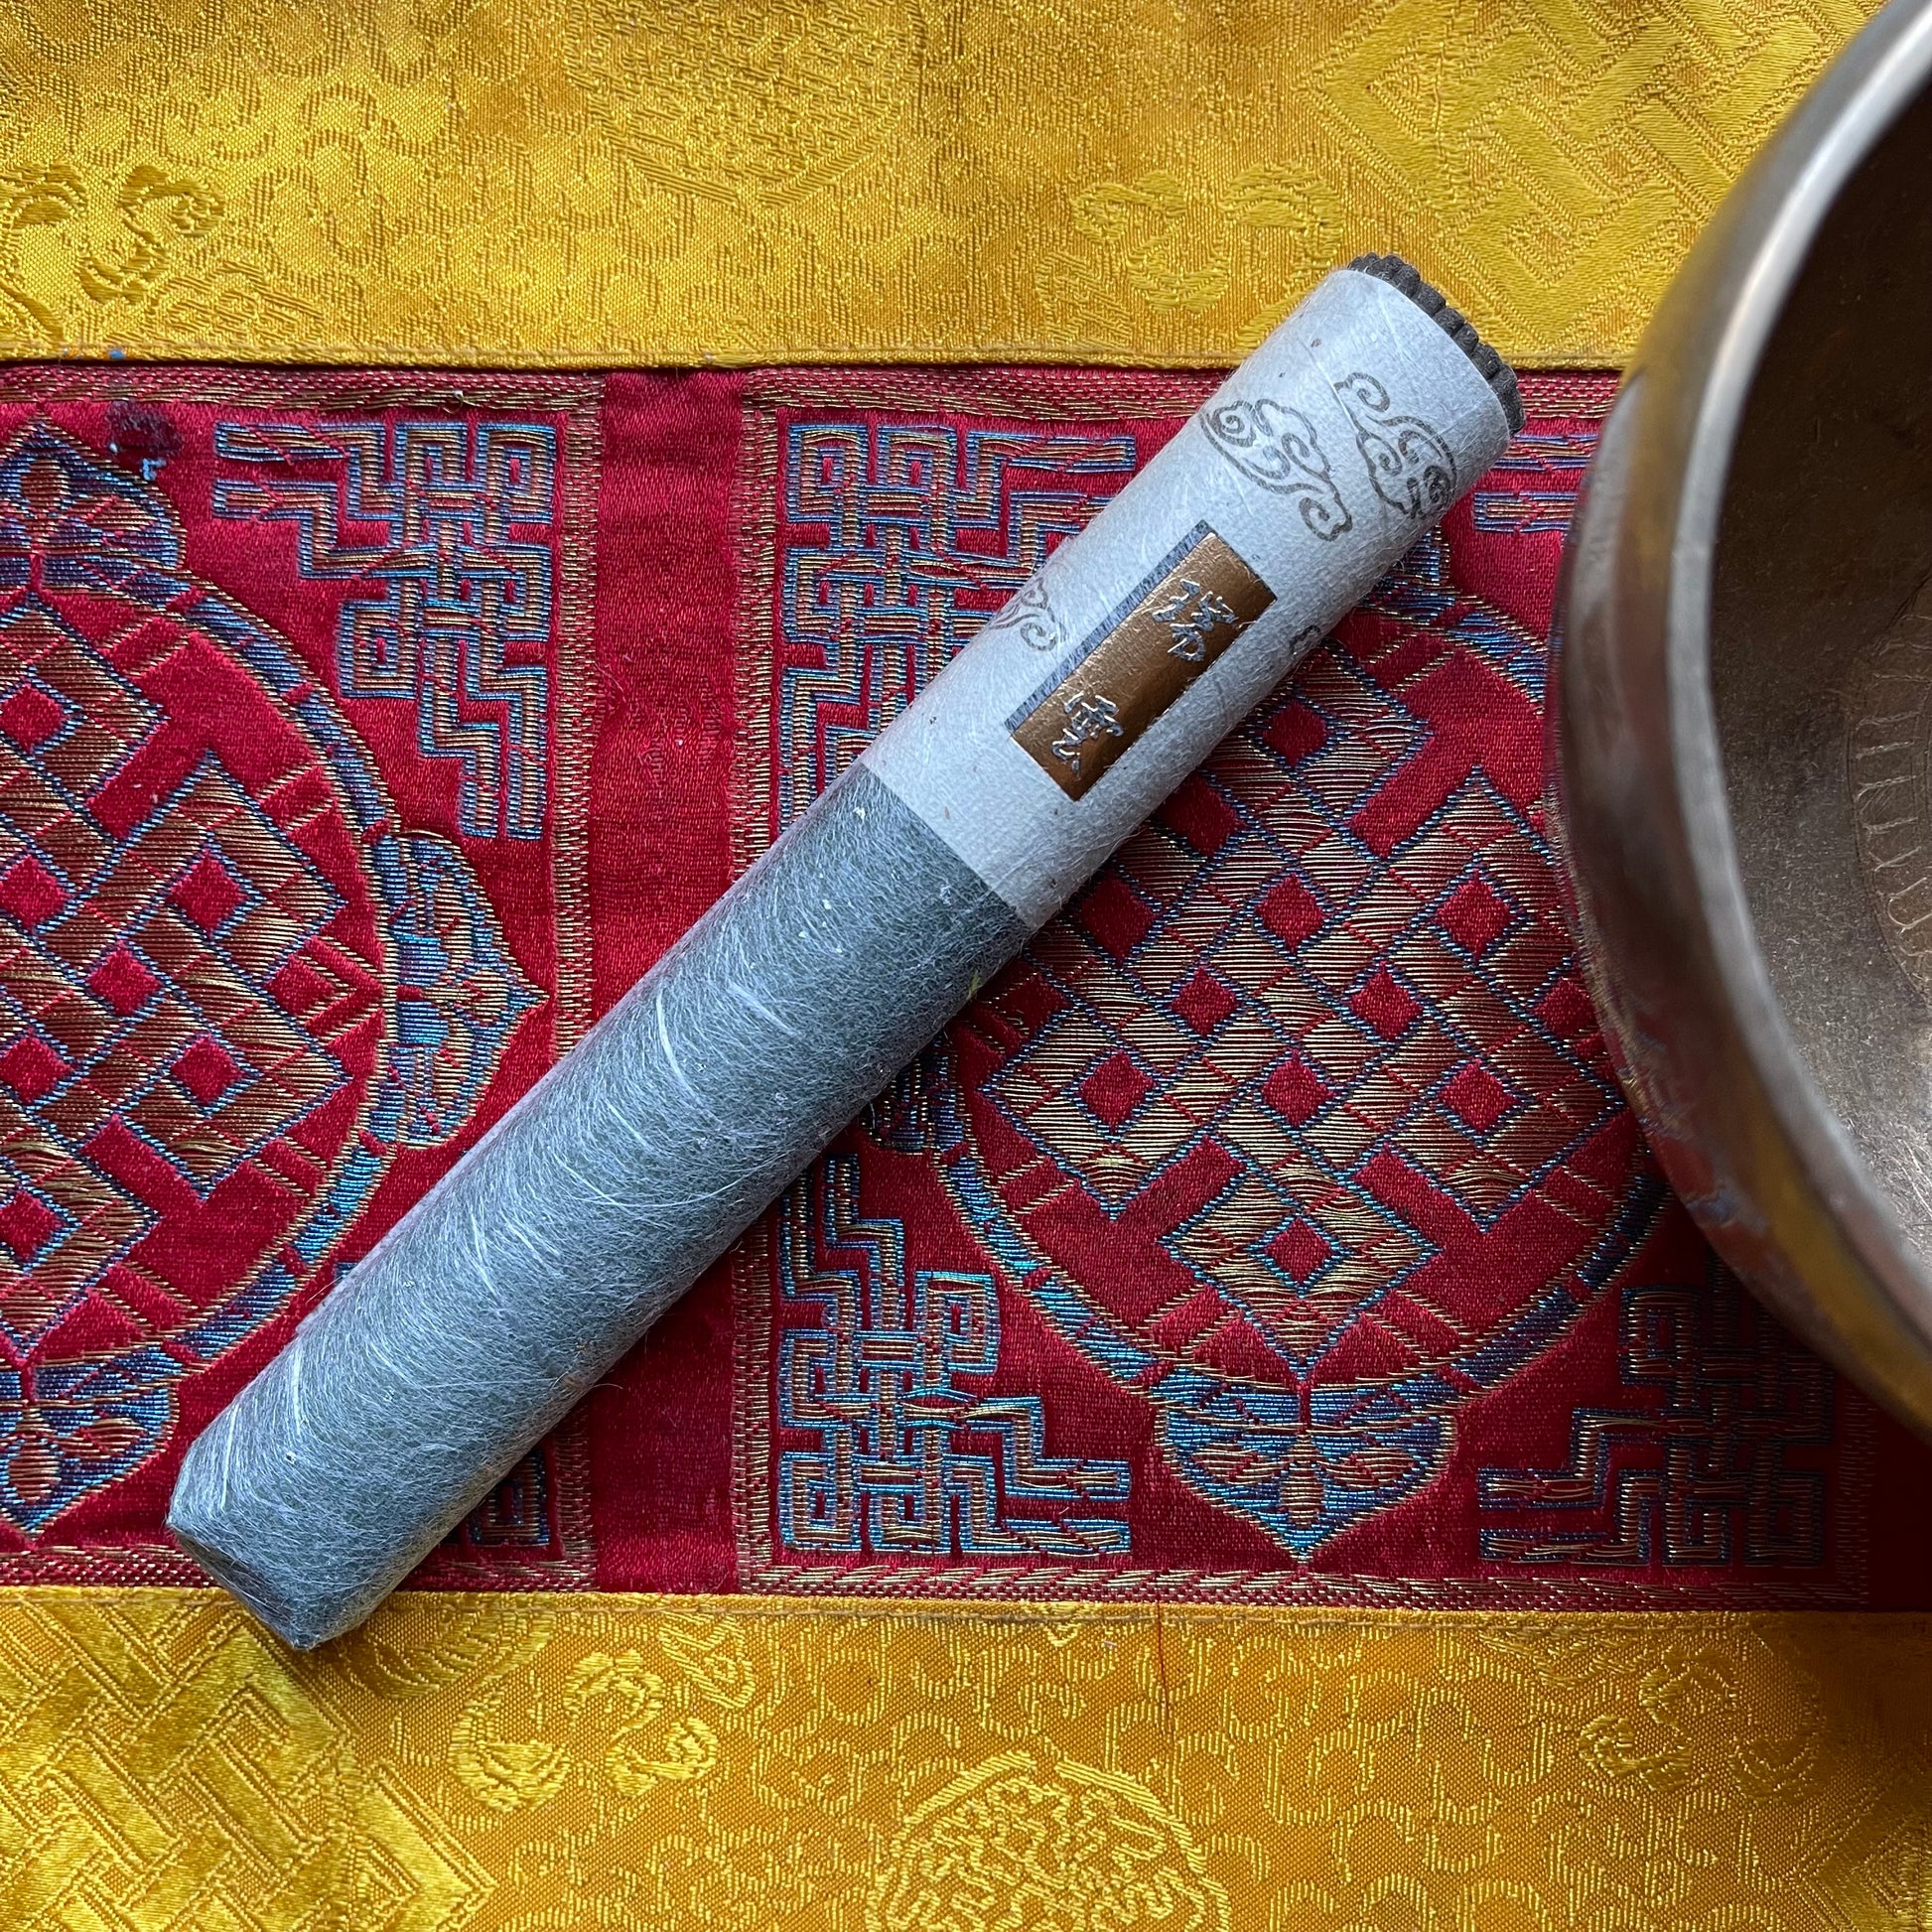 Zuiun 'Good Fortune Cloud' Incense Roll (50 Sticks)